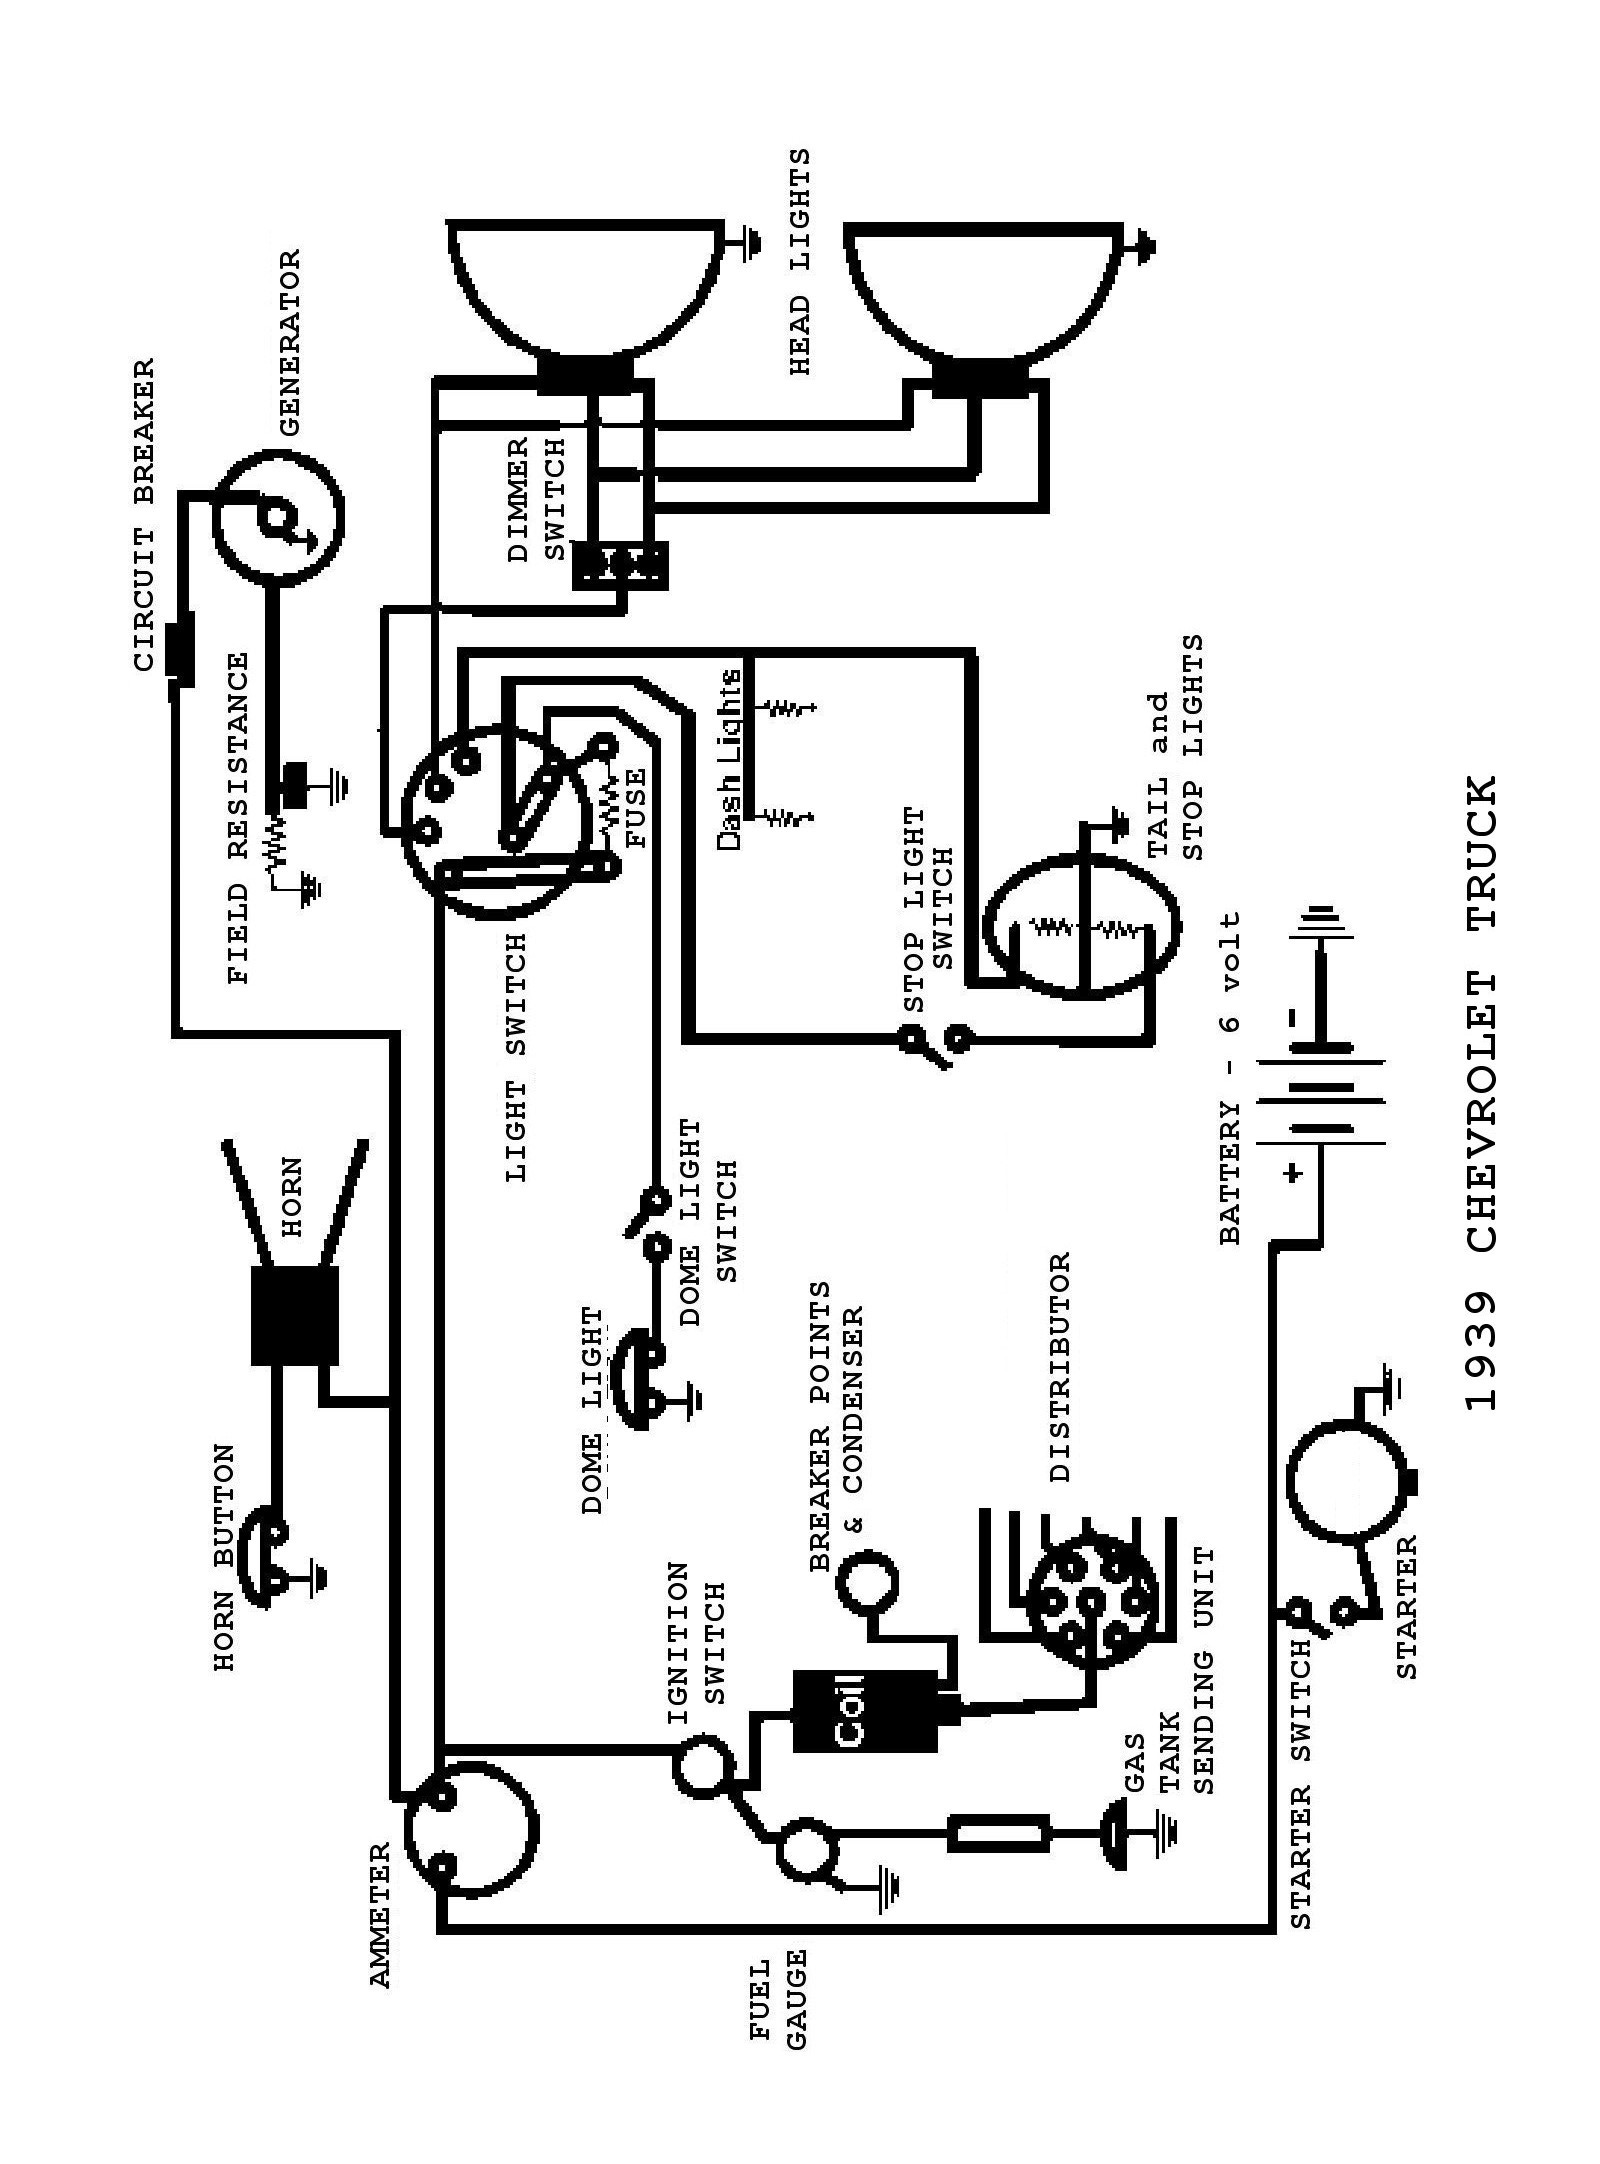 Truck Lite Wiring Diagram Chevy Wiring Diagrams Of Truck Lite Wiring Diagram